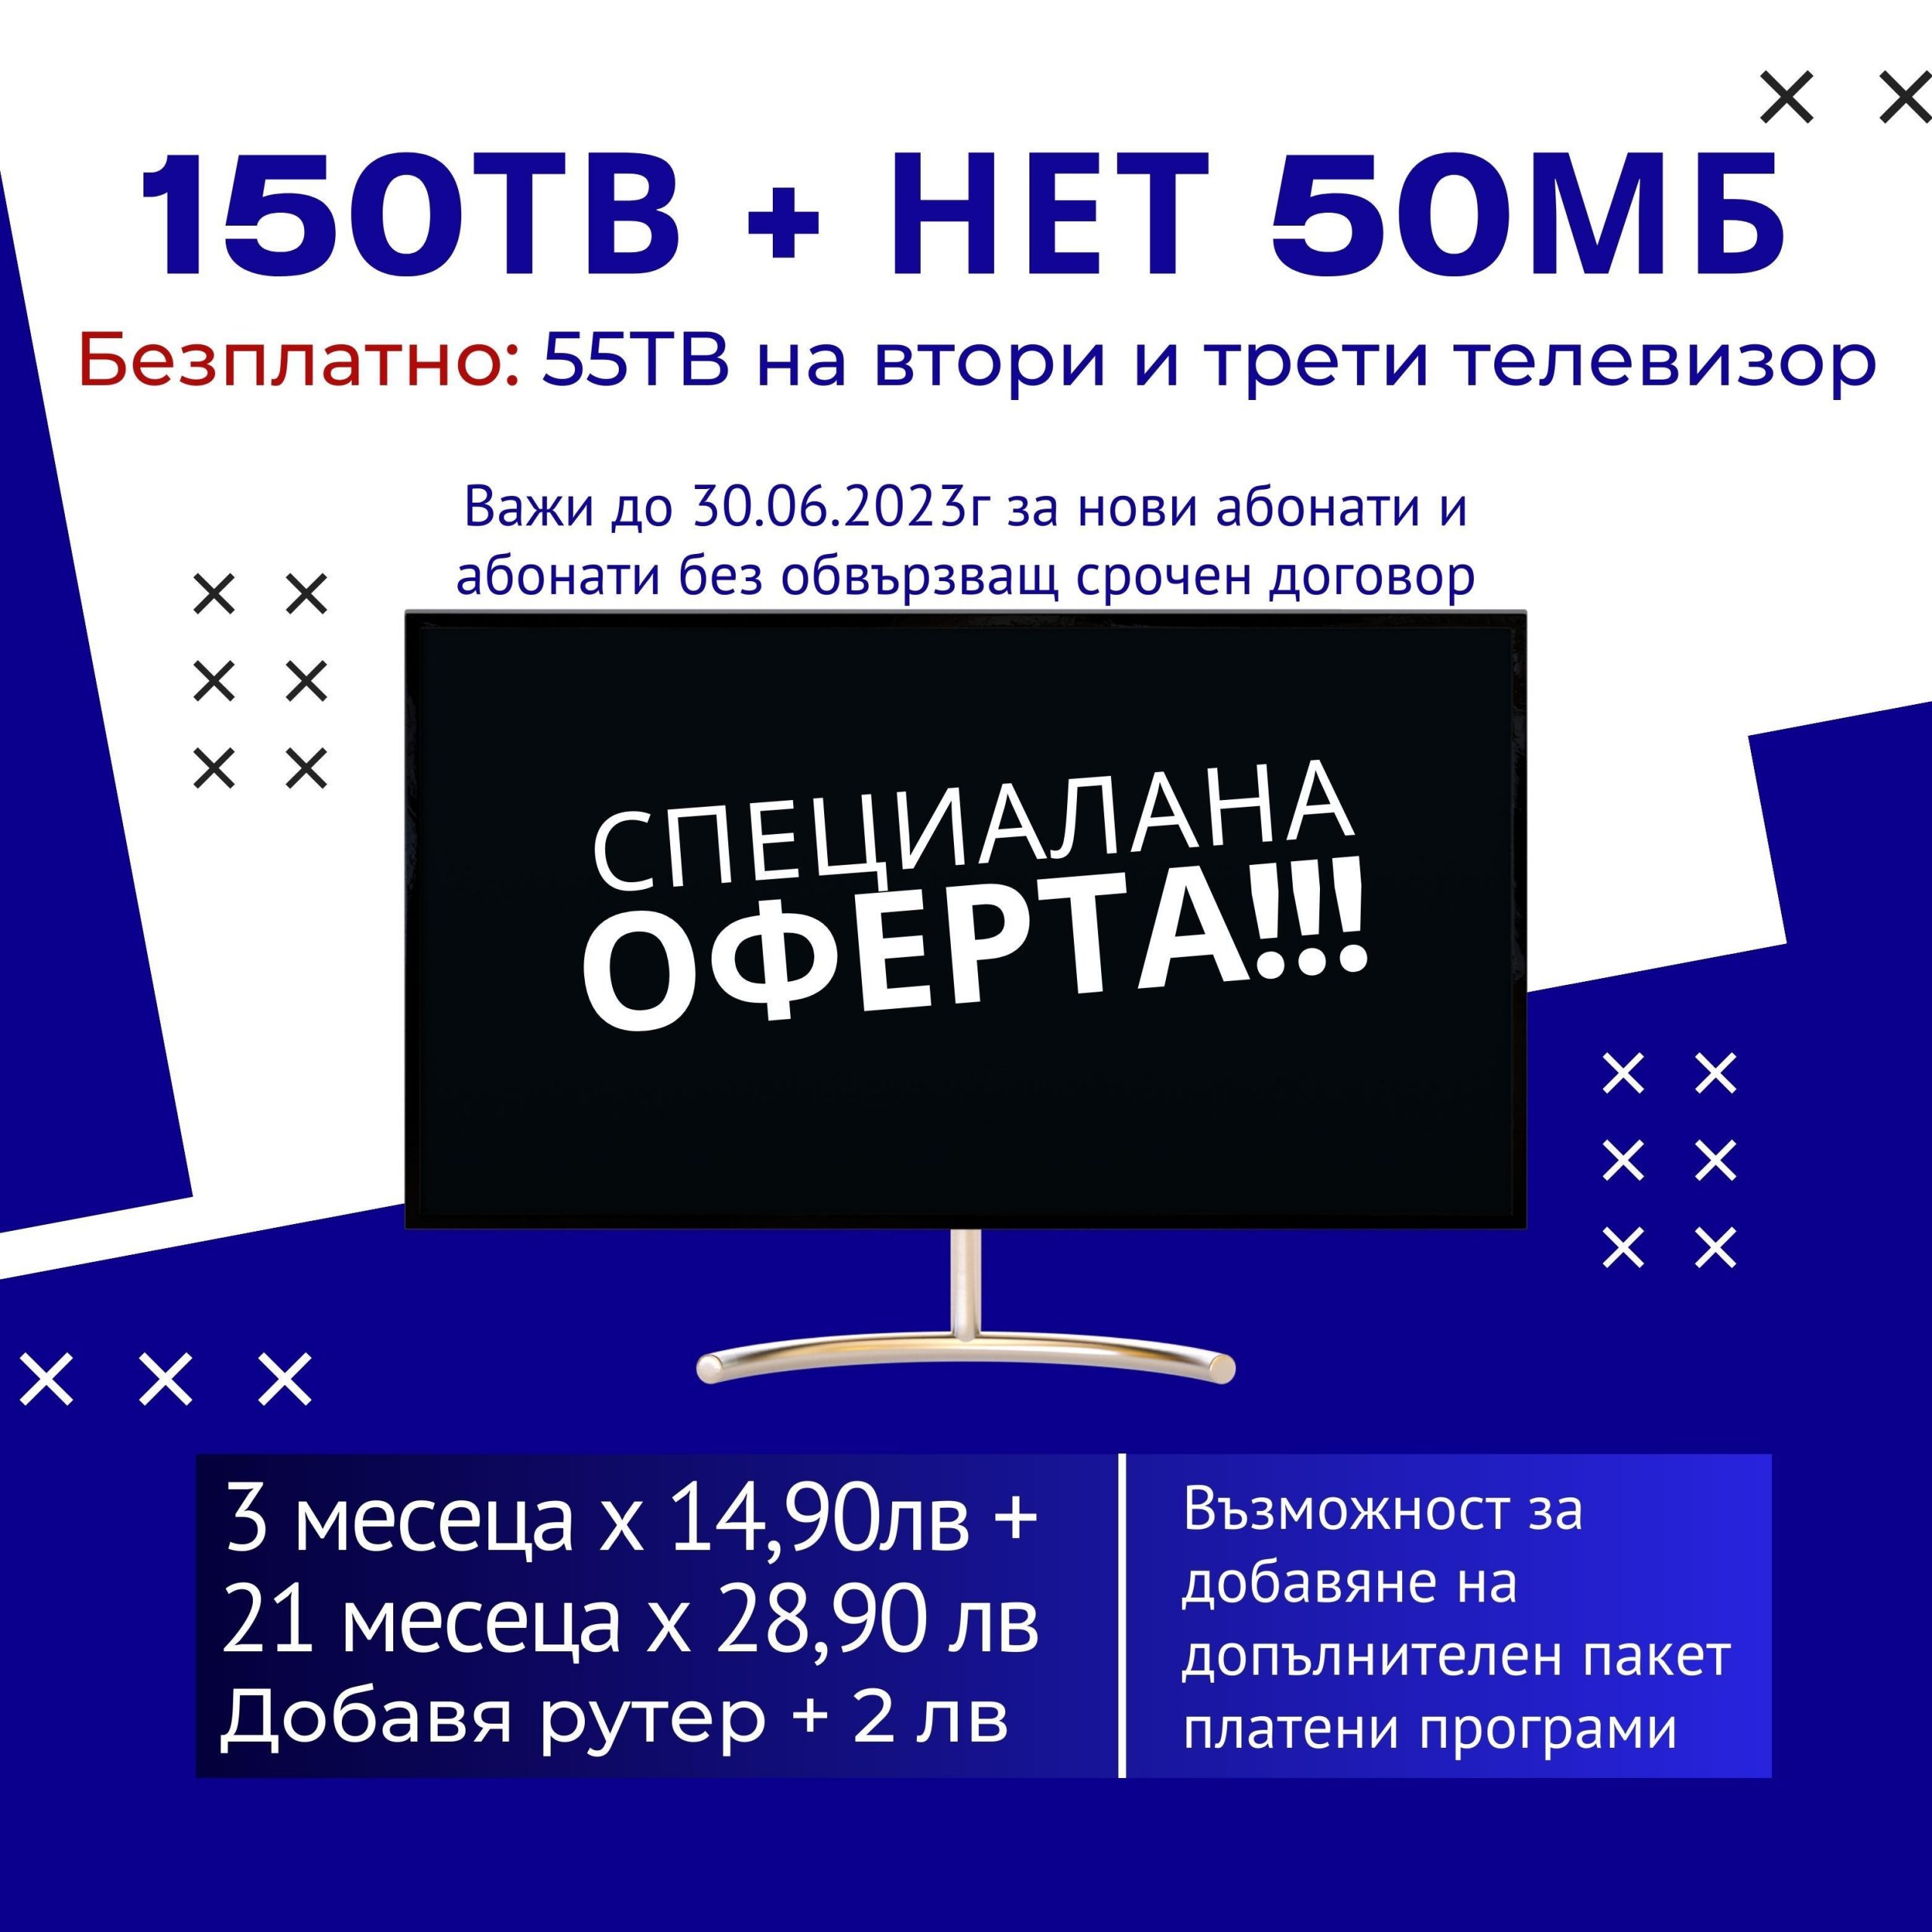 150TВ + НЕТ 50Mbps Промоция ЕК Царевец